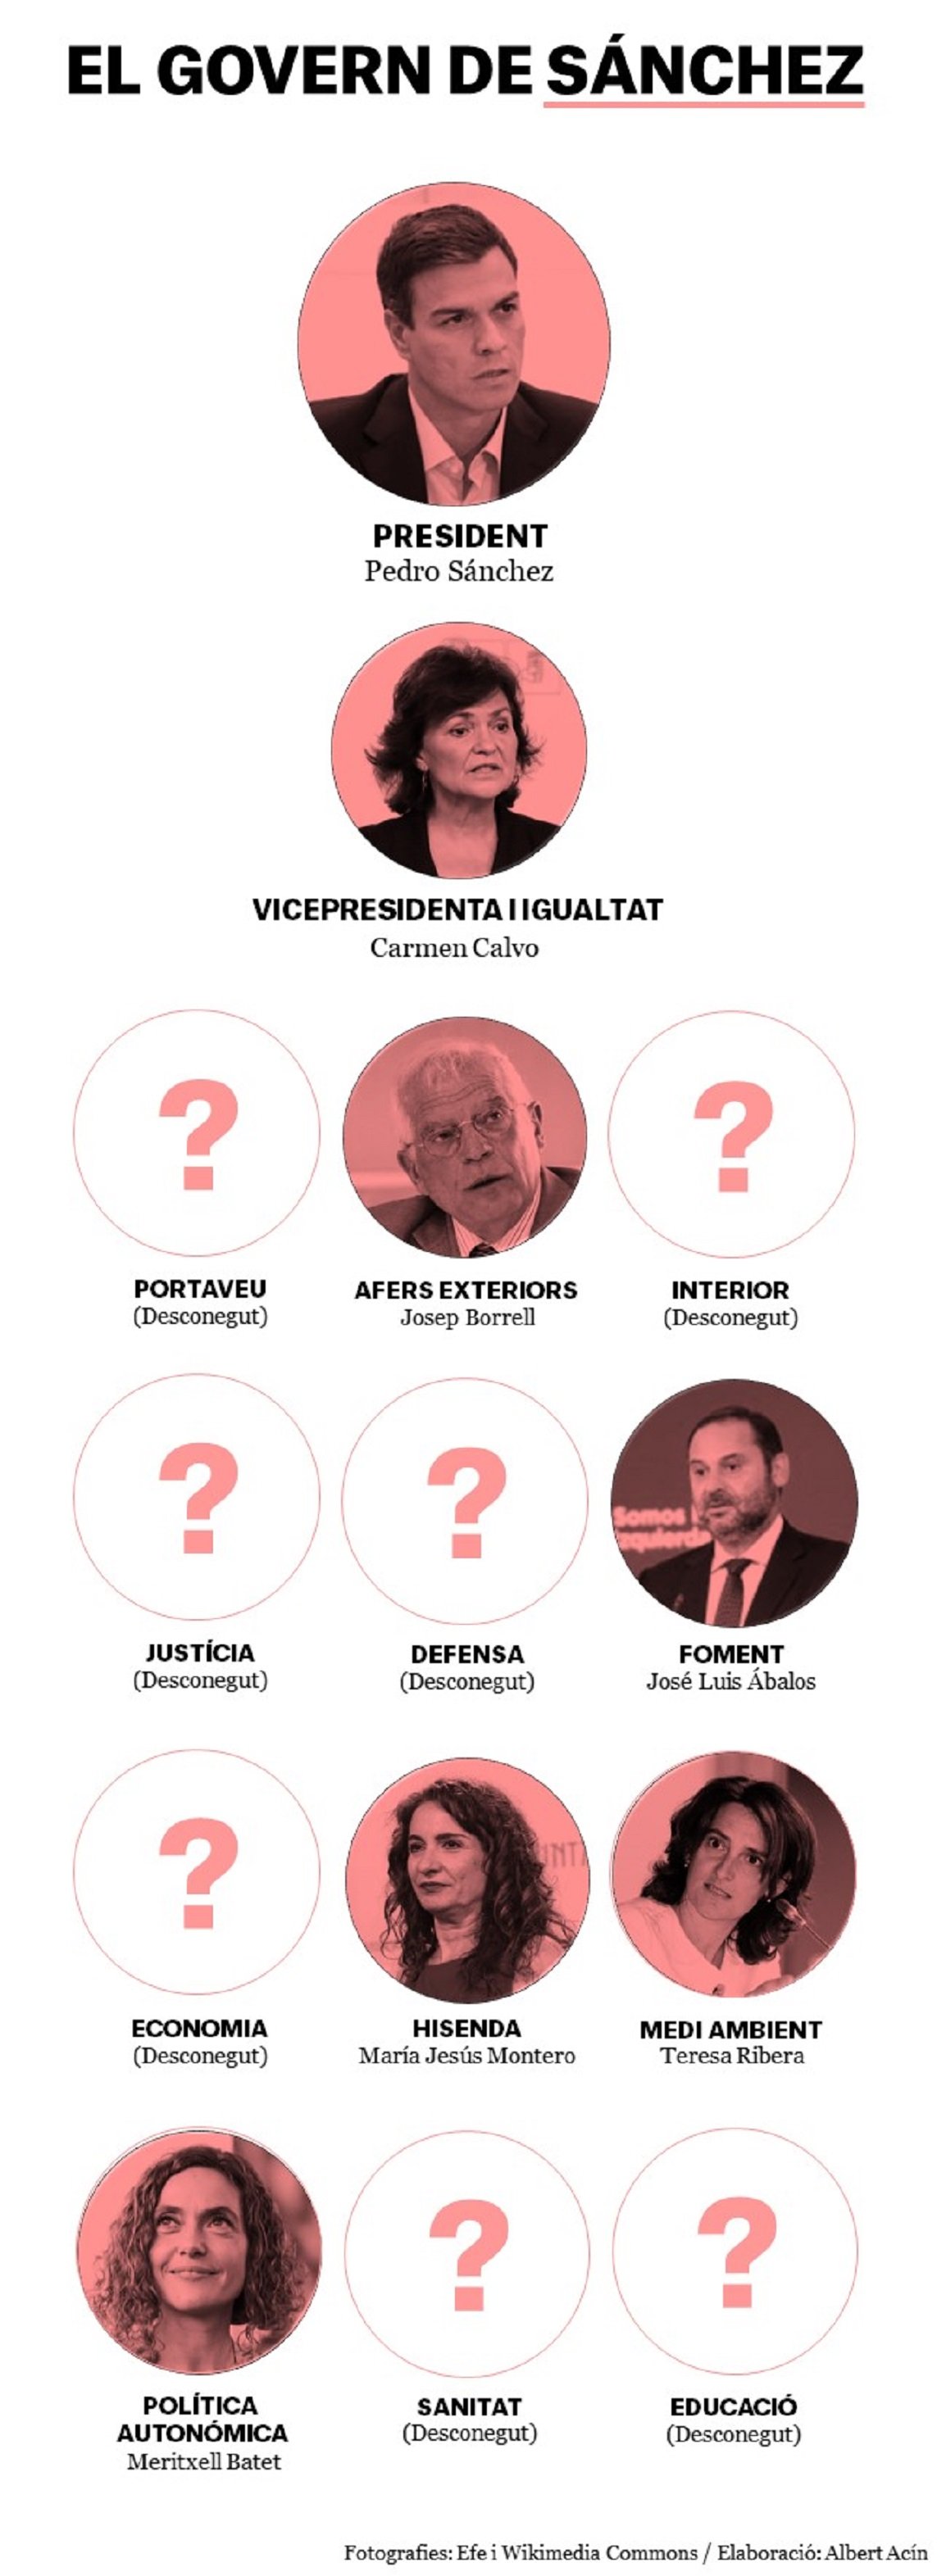 Infografía: los ministros del gobierno de Sánchez